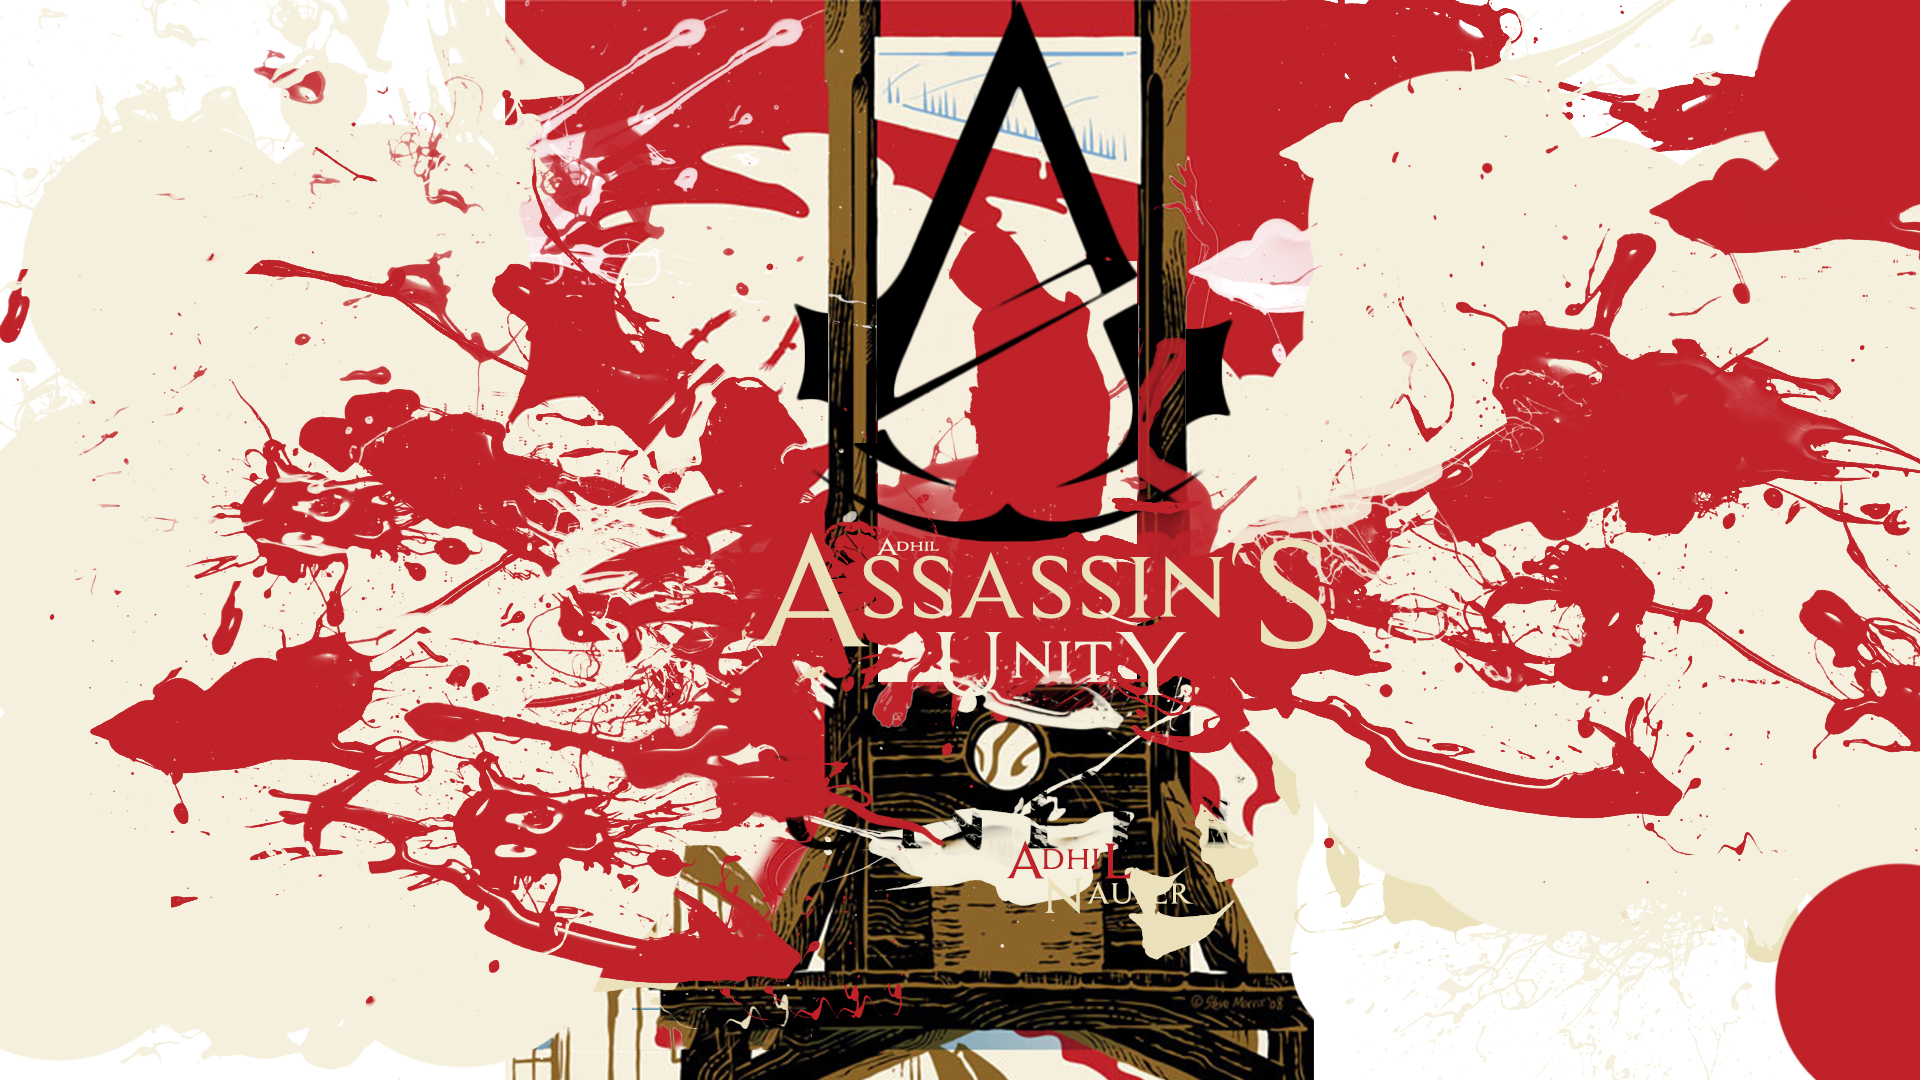 Assassin's Creed Unity Wallpaper Hd - HD Wallpaper 